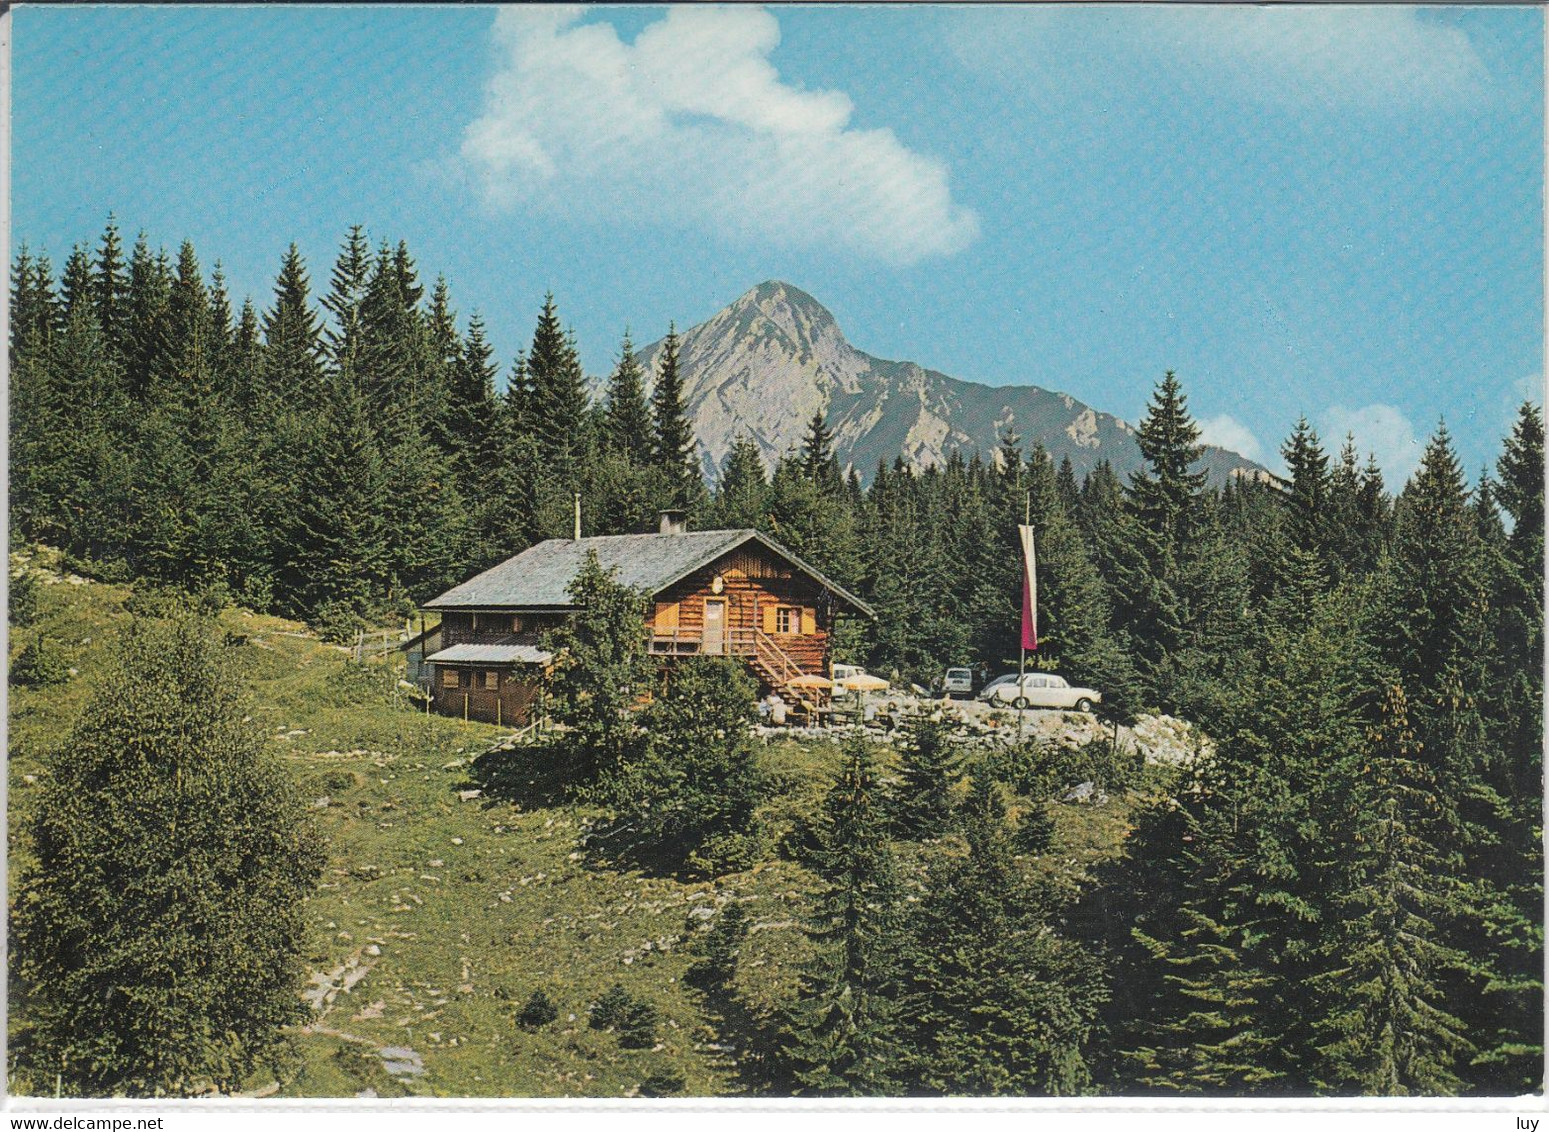 POSTALM, Strobler Hütte,  Panorama - Strobl